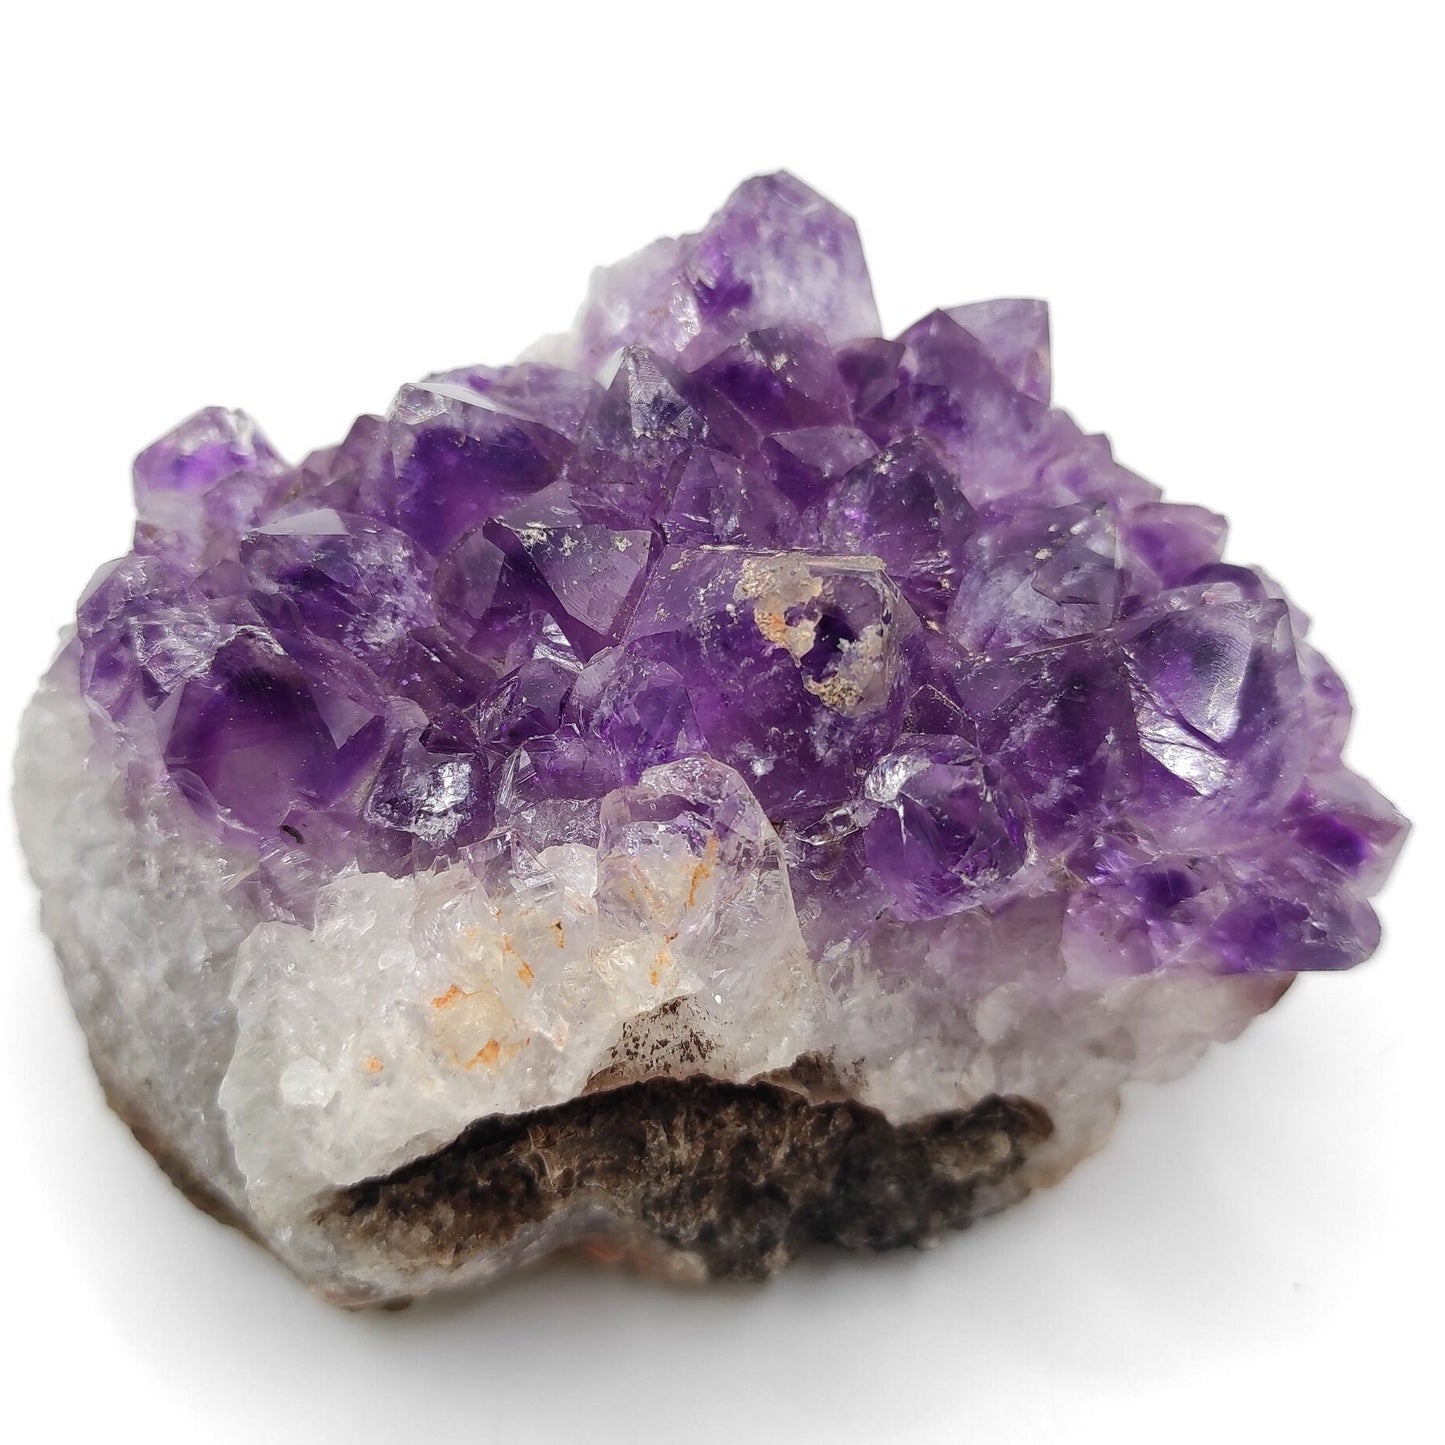 561g Amethyst Crystal Cluster Purple Amethyst from South Brazil Amethyst Gemstone Raw Amethyst Rough Amethyst Desk Crystal Natural Crystals